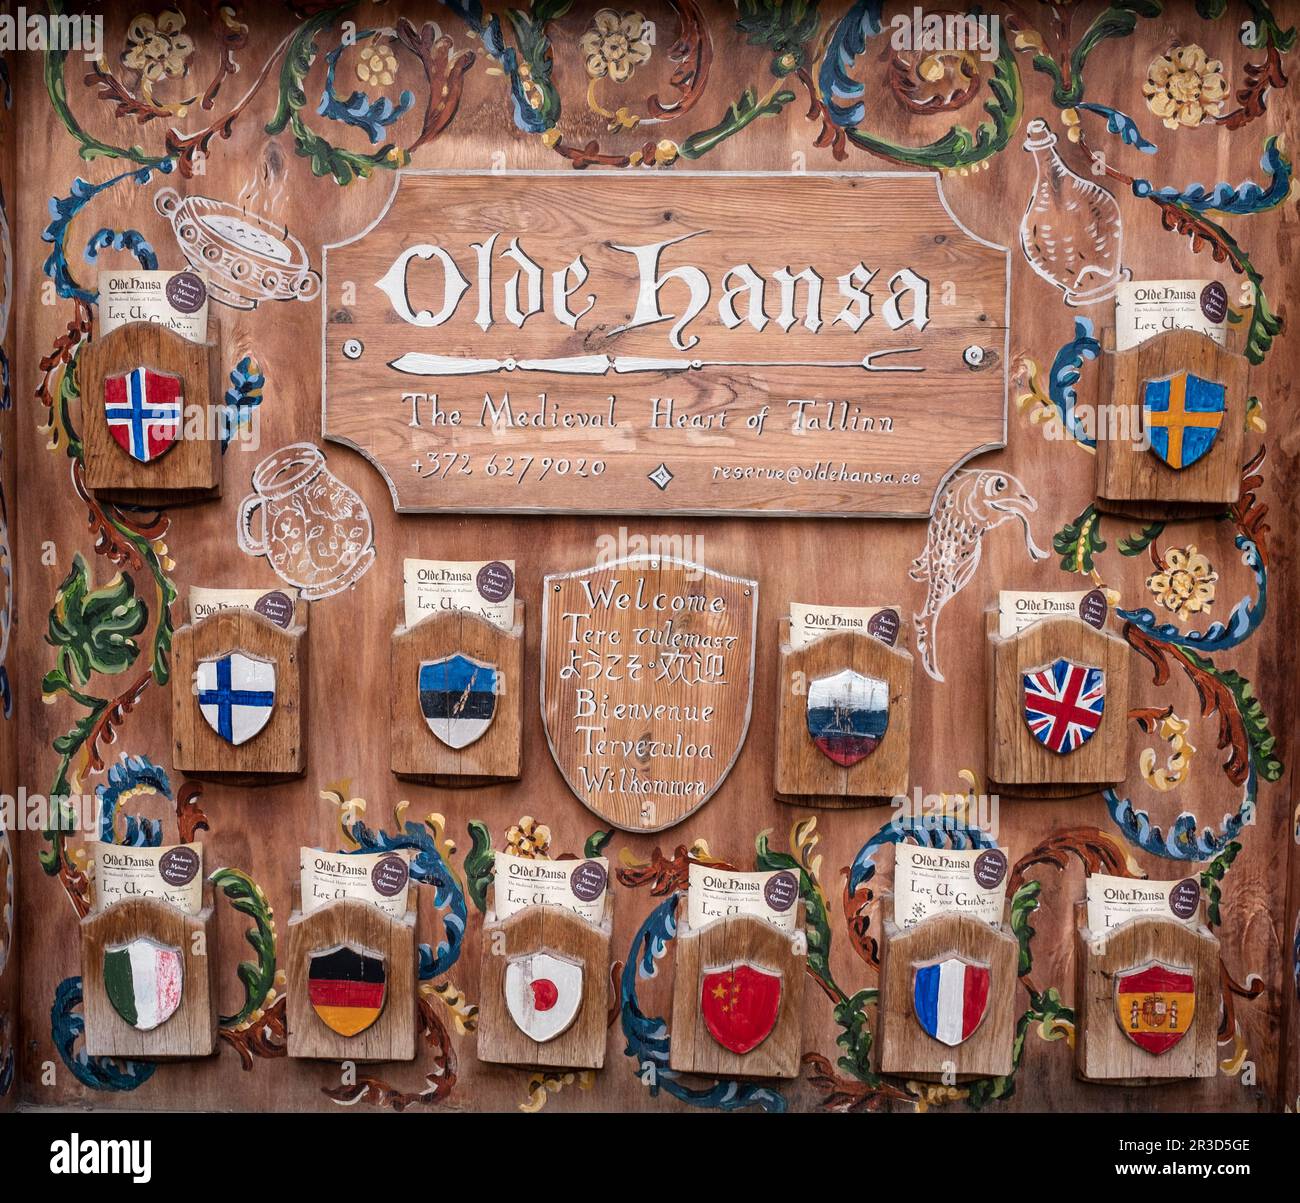 Olde Hansa il menu del ristorante medievale in diverse lingue, il centro storico di Tallinn, Estonia Foto Stock